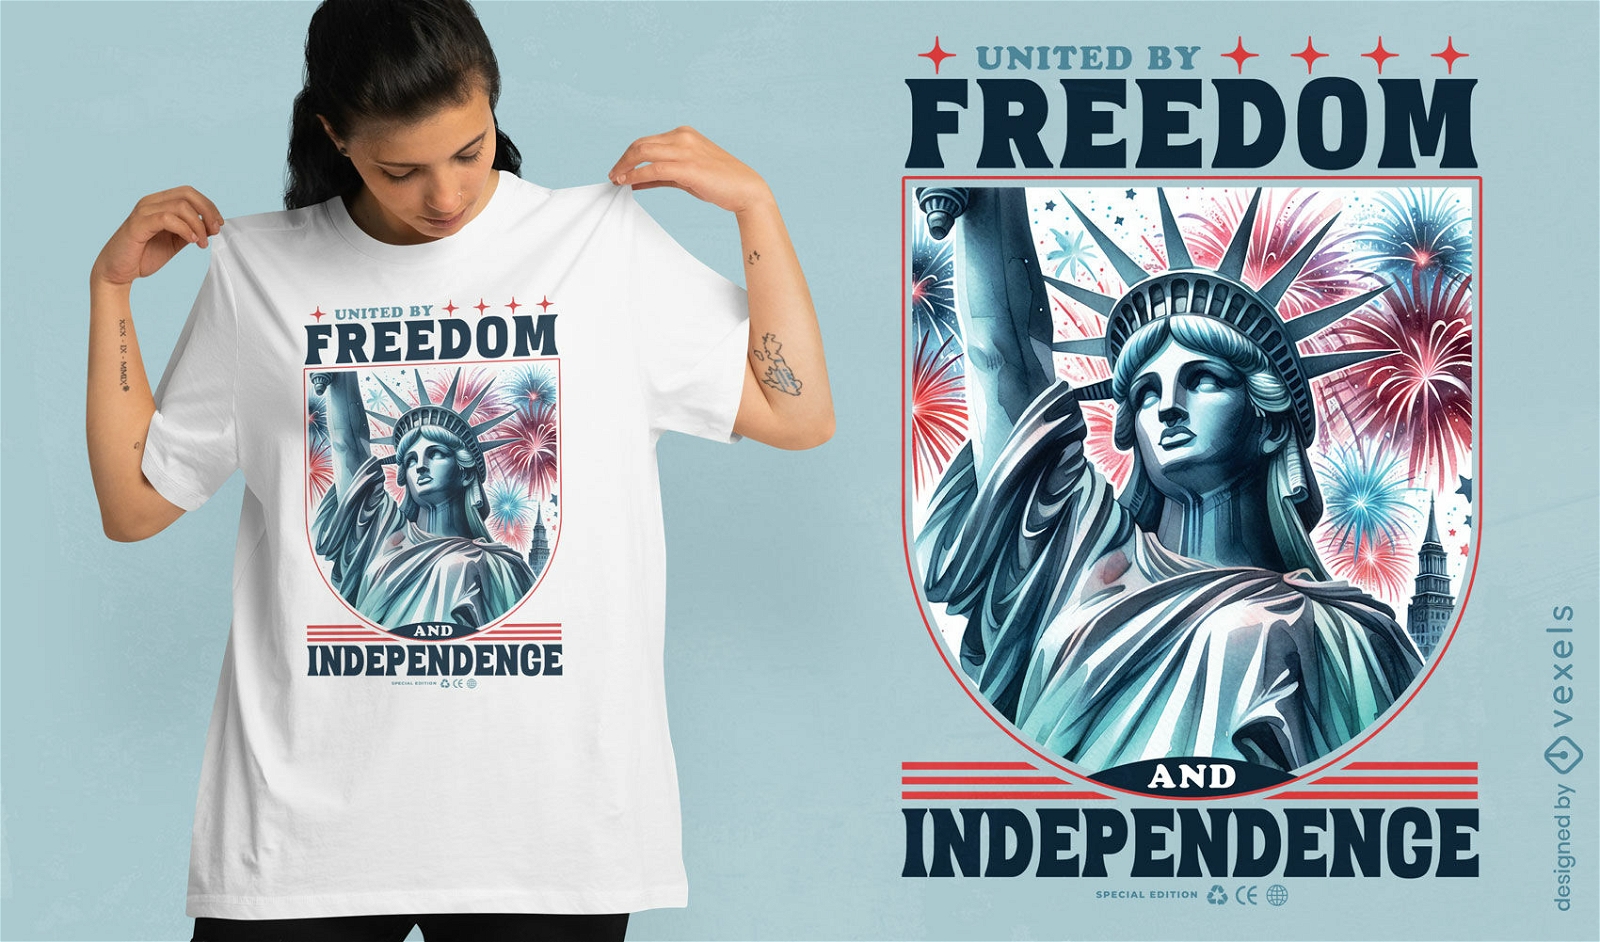 Diseño de camiseta Unidos por la libertad y la independencia.